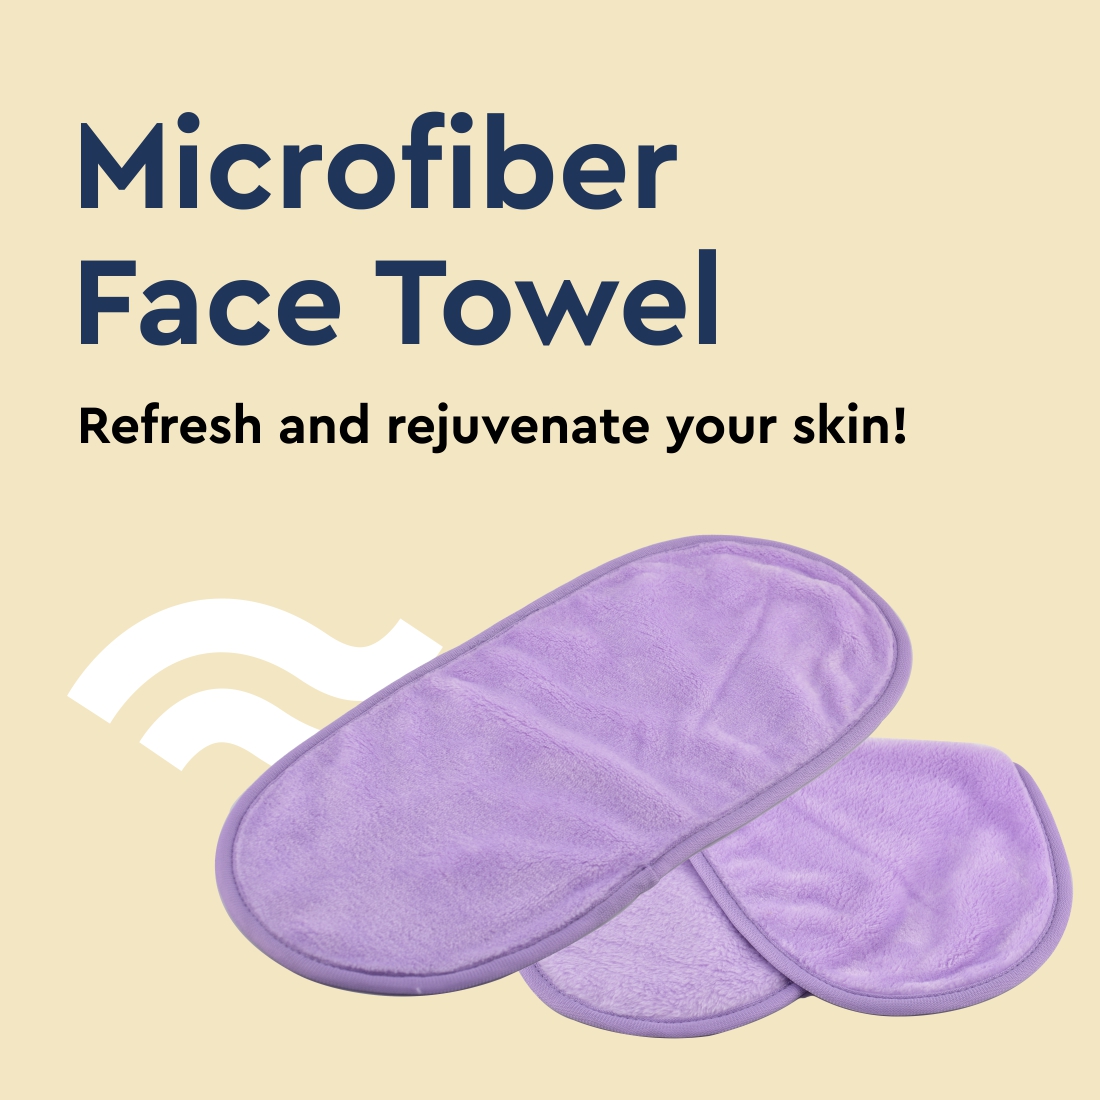 Microfiber Face Towel